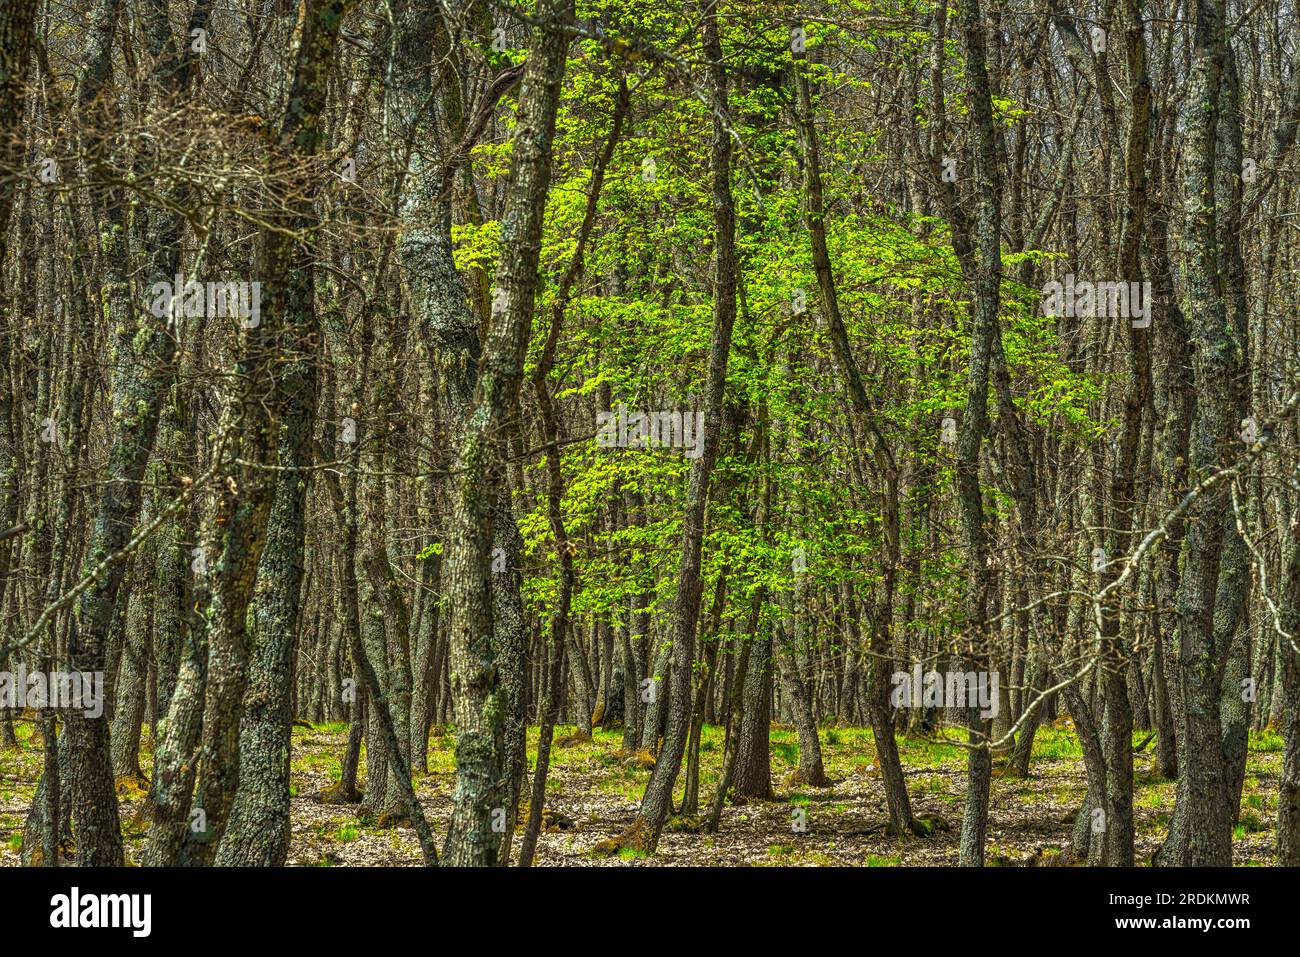 Im Wald junger Eichen, die von Blättern befreit sind, steht ein Baum mit hellgrünen Blättern. Abruzzen, Italien, Europa Stockfoto